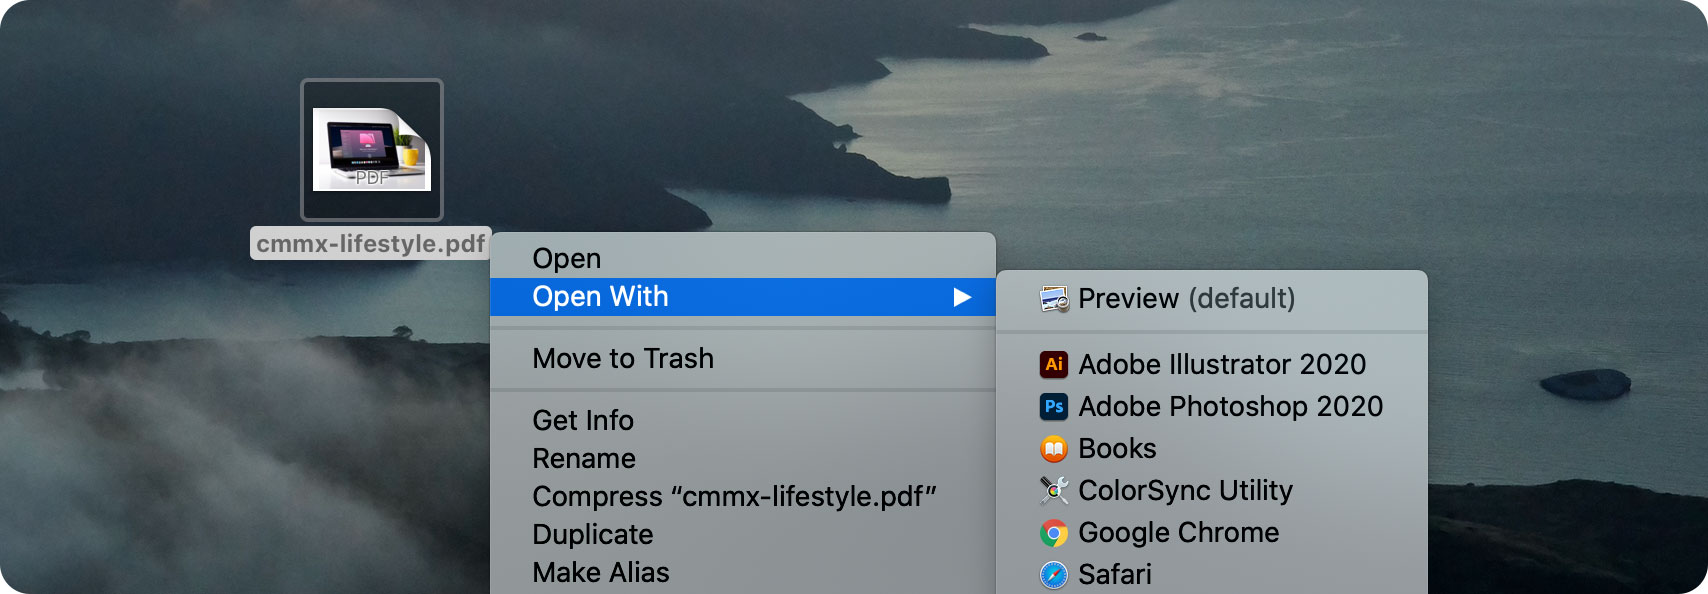 Nhấn chuột phải vào file PDF, chọn Open with rồi chọn Preview để mở hình ảnh ở chế độ Preview